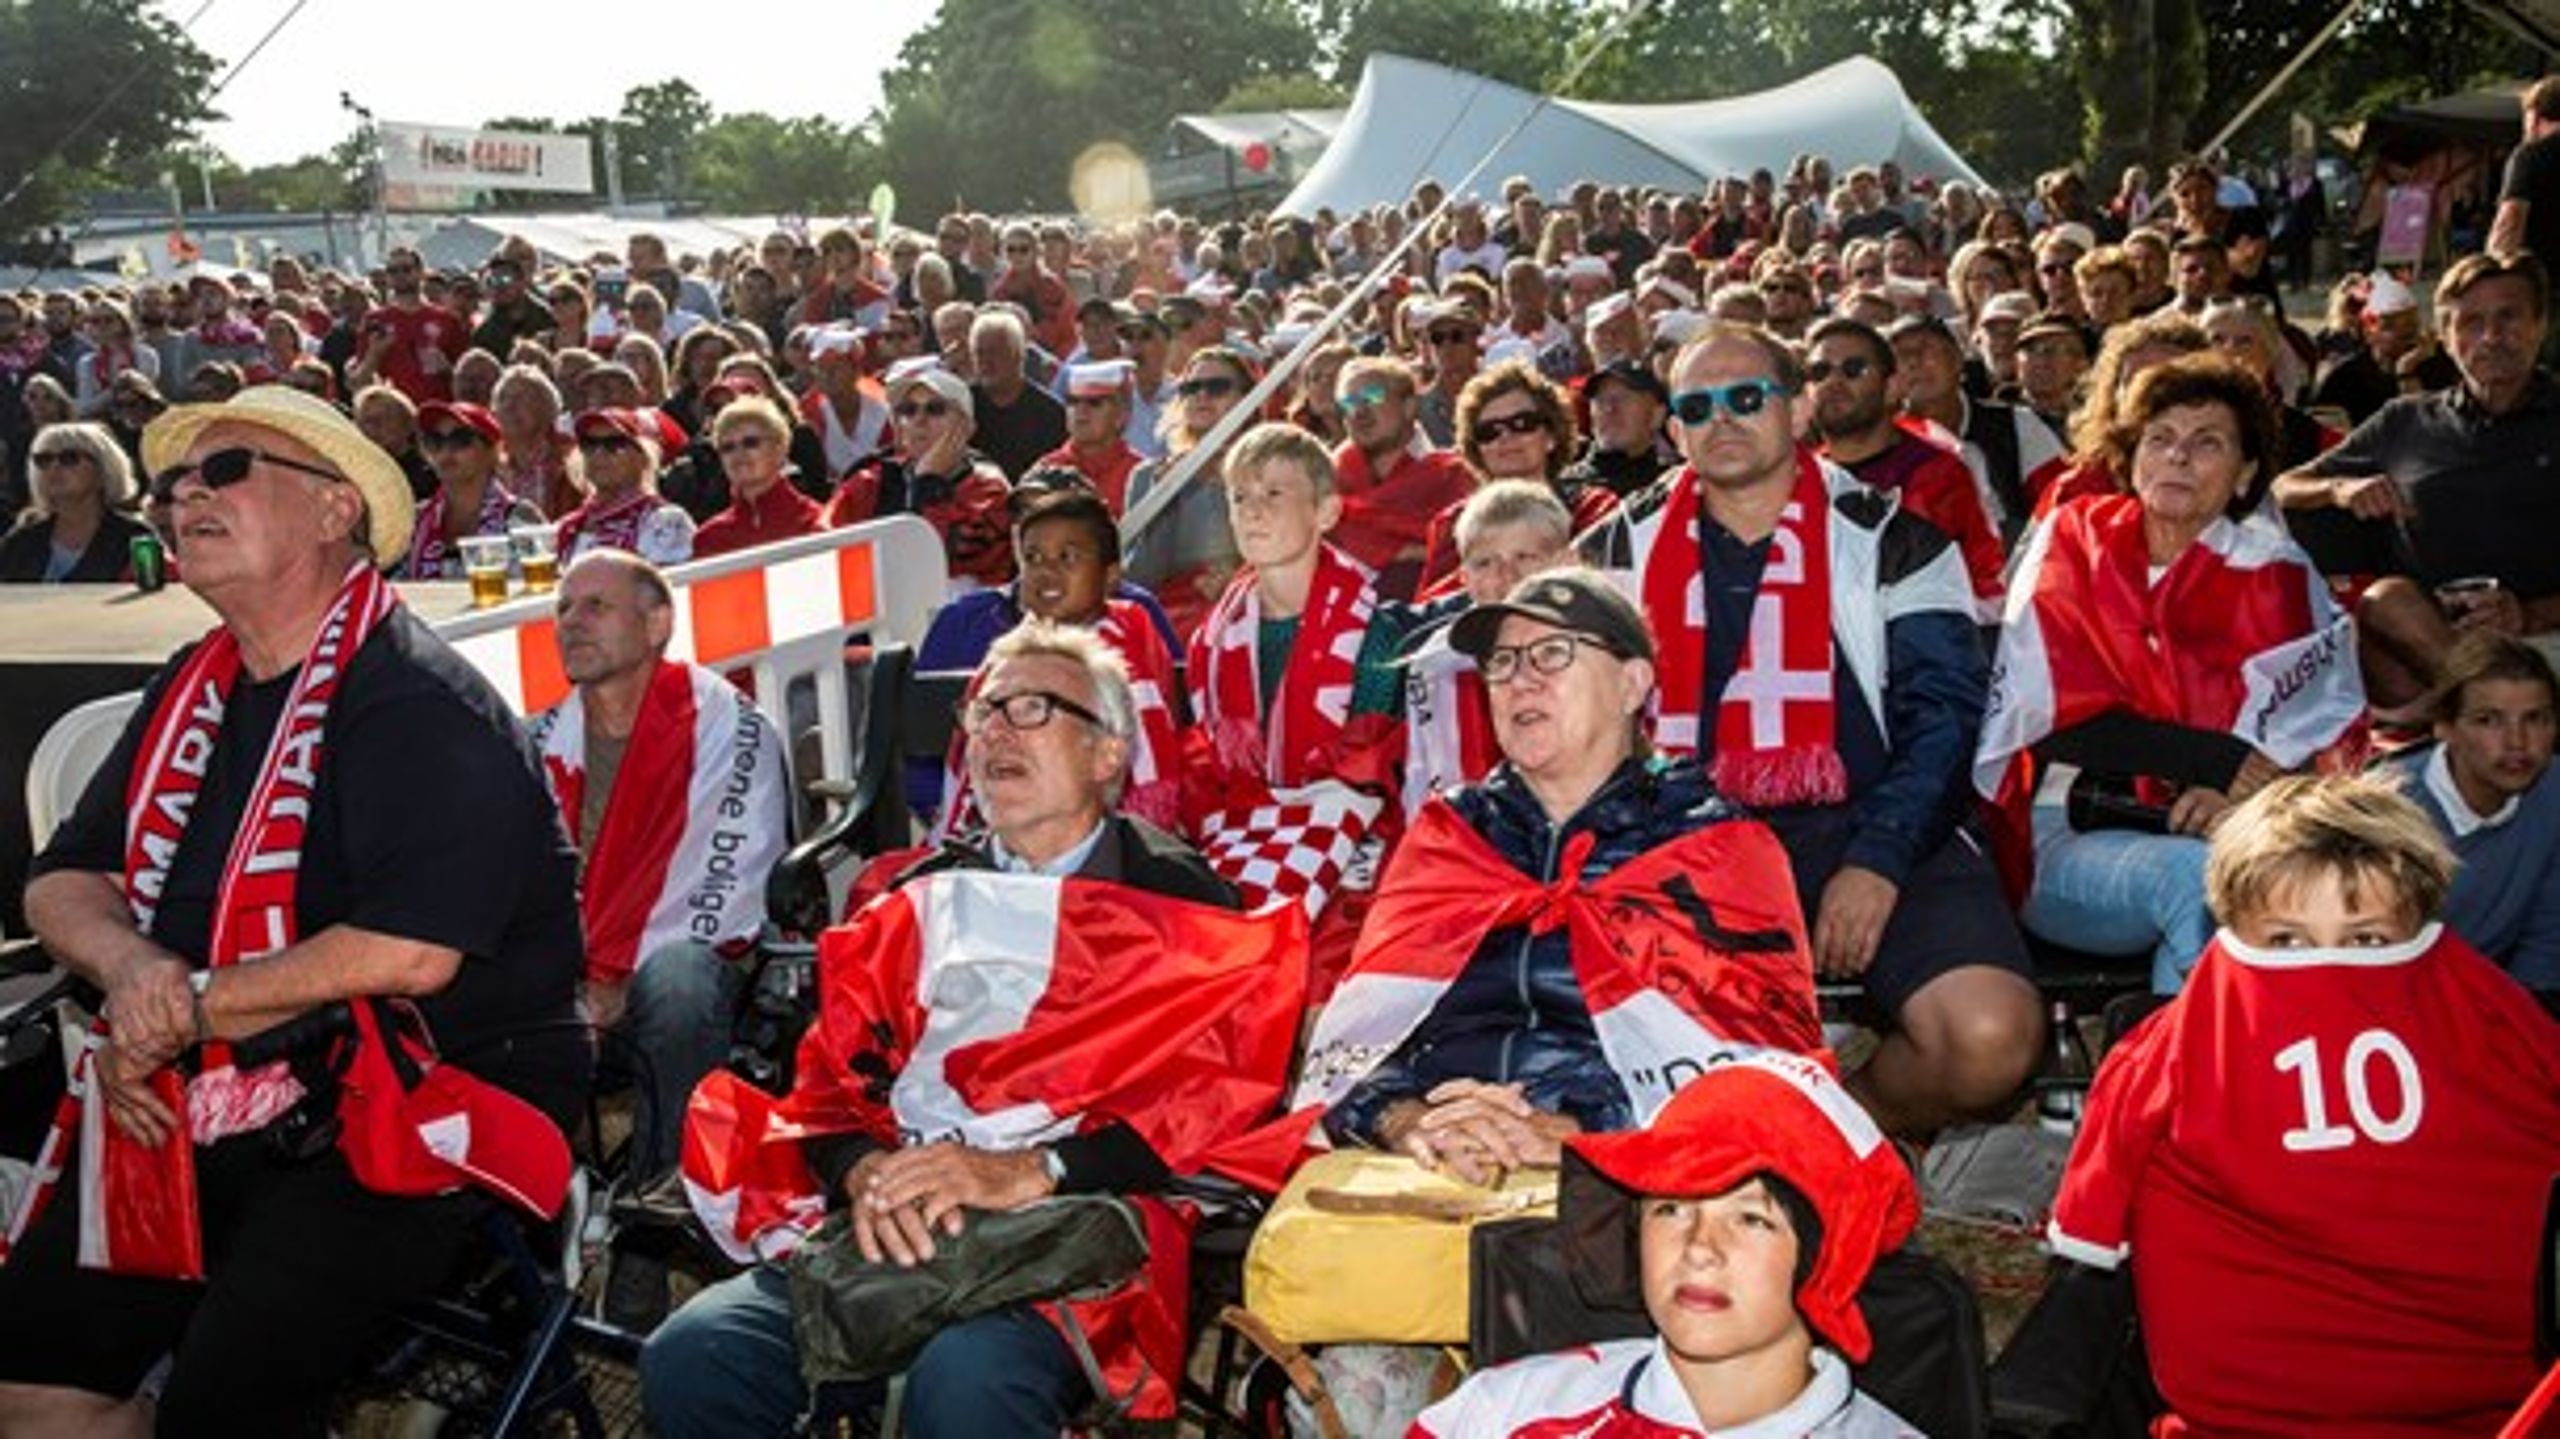 FÆLLESSKAB Fædre har et ansvar for at invitere deres døtre med ind i mandefællesskaberne, for eksempel når der skal ses VM i sommerferien, skriver Hanne-Vibeke Holst. Her ses der fodbold under Folkemødet i Allinge i sidste uge.